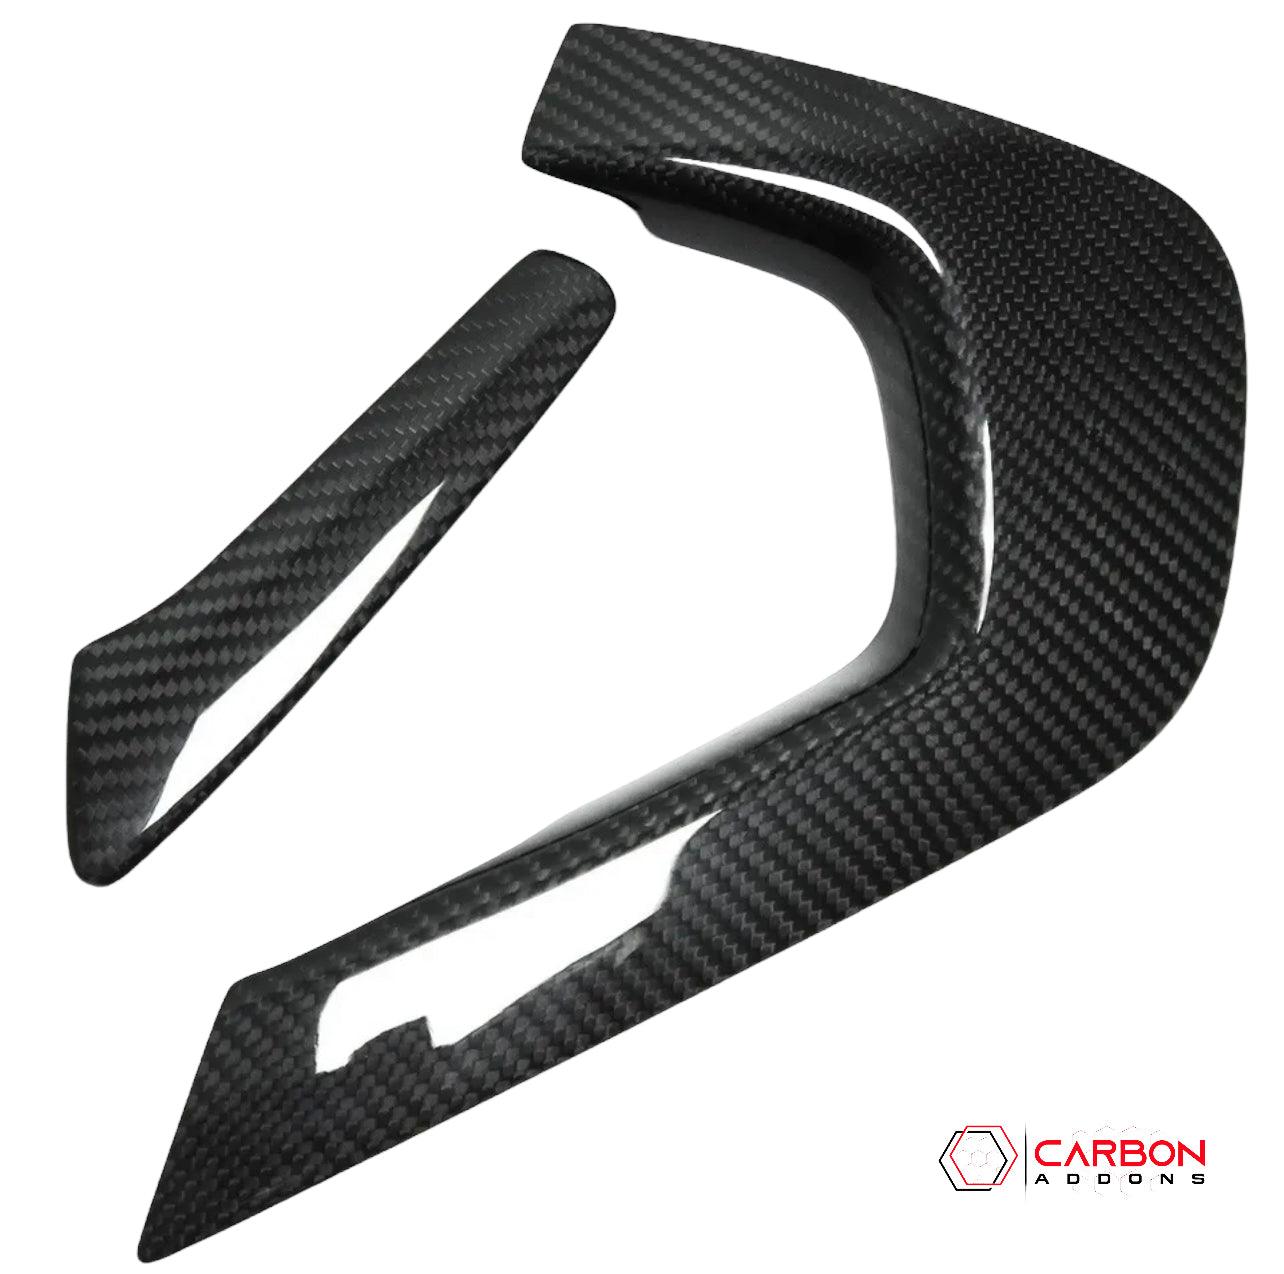 C7 Corvette 2014-2029 Carbon Fiber Center Console Handle Trim Covers - carbonaddons Carbon Fiber Parts, Accessories, Upgrades, Mods